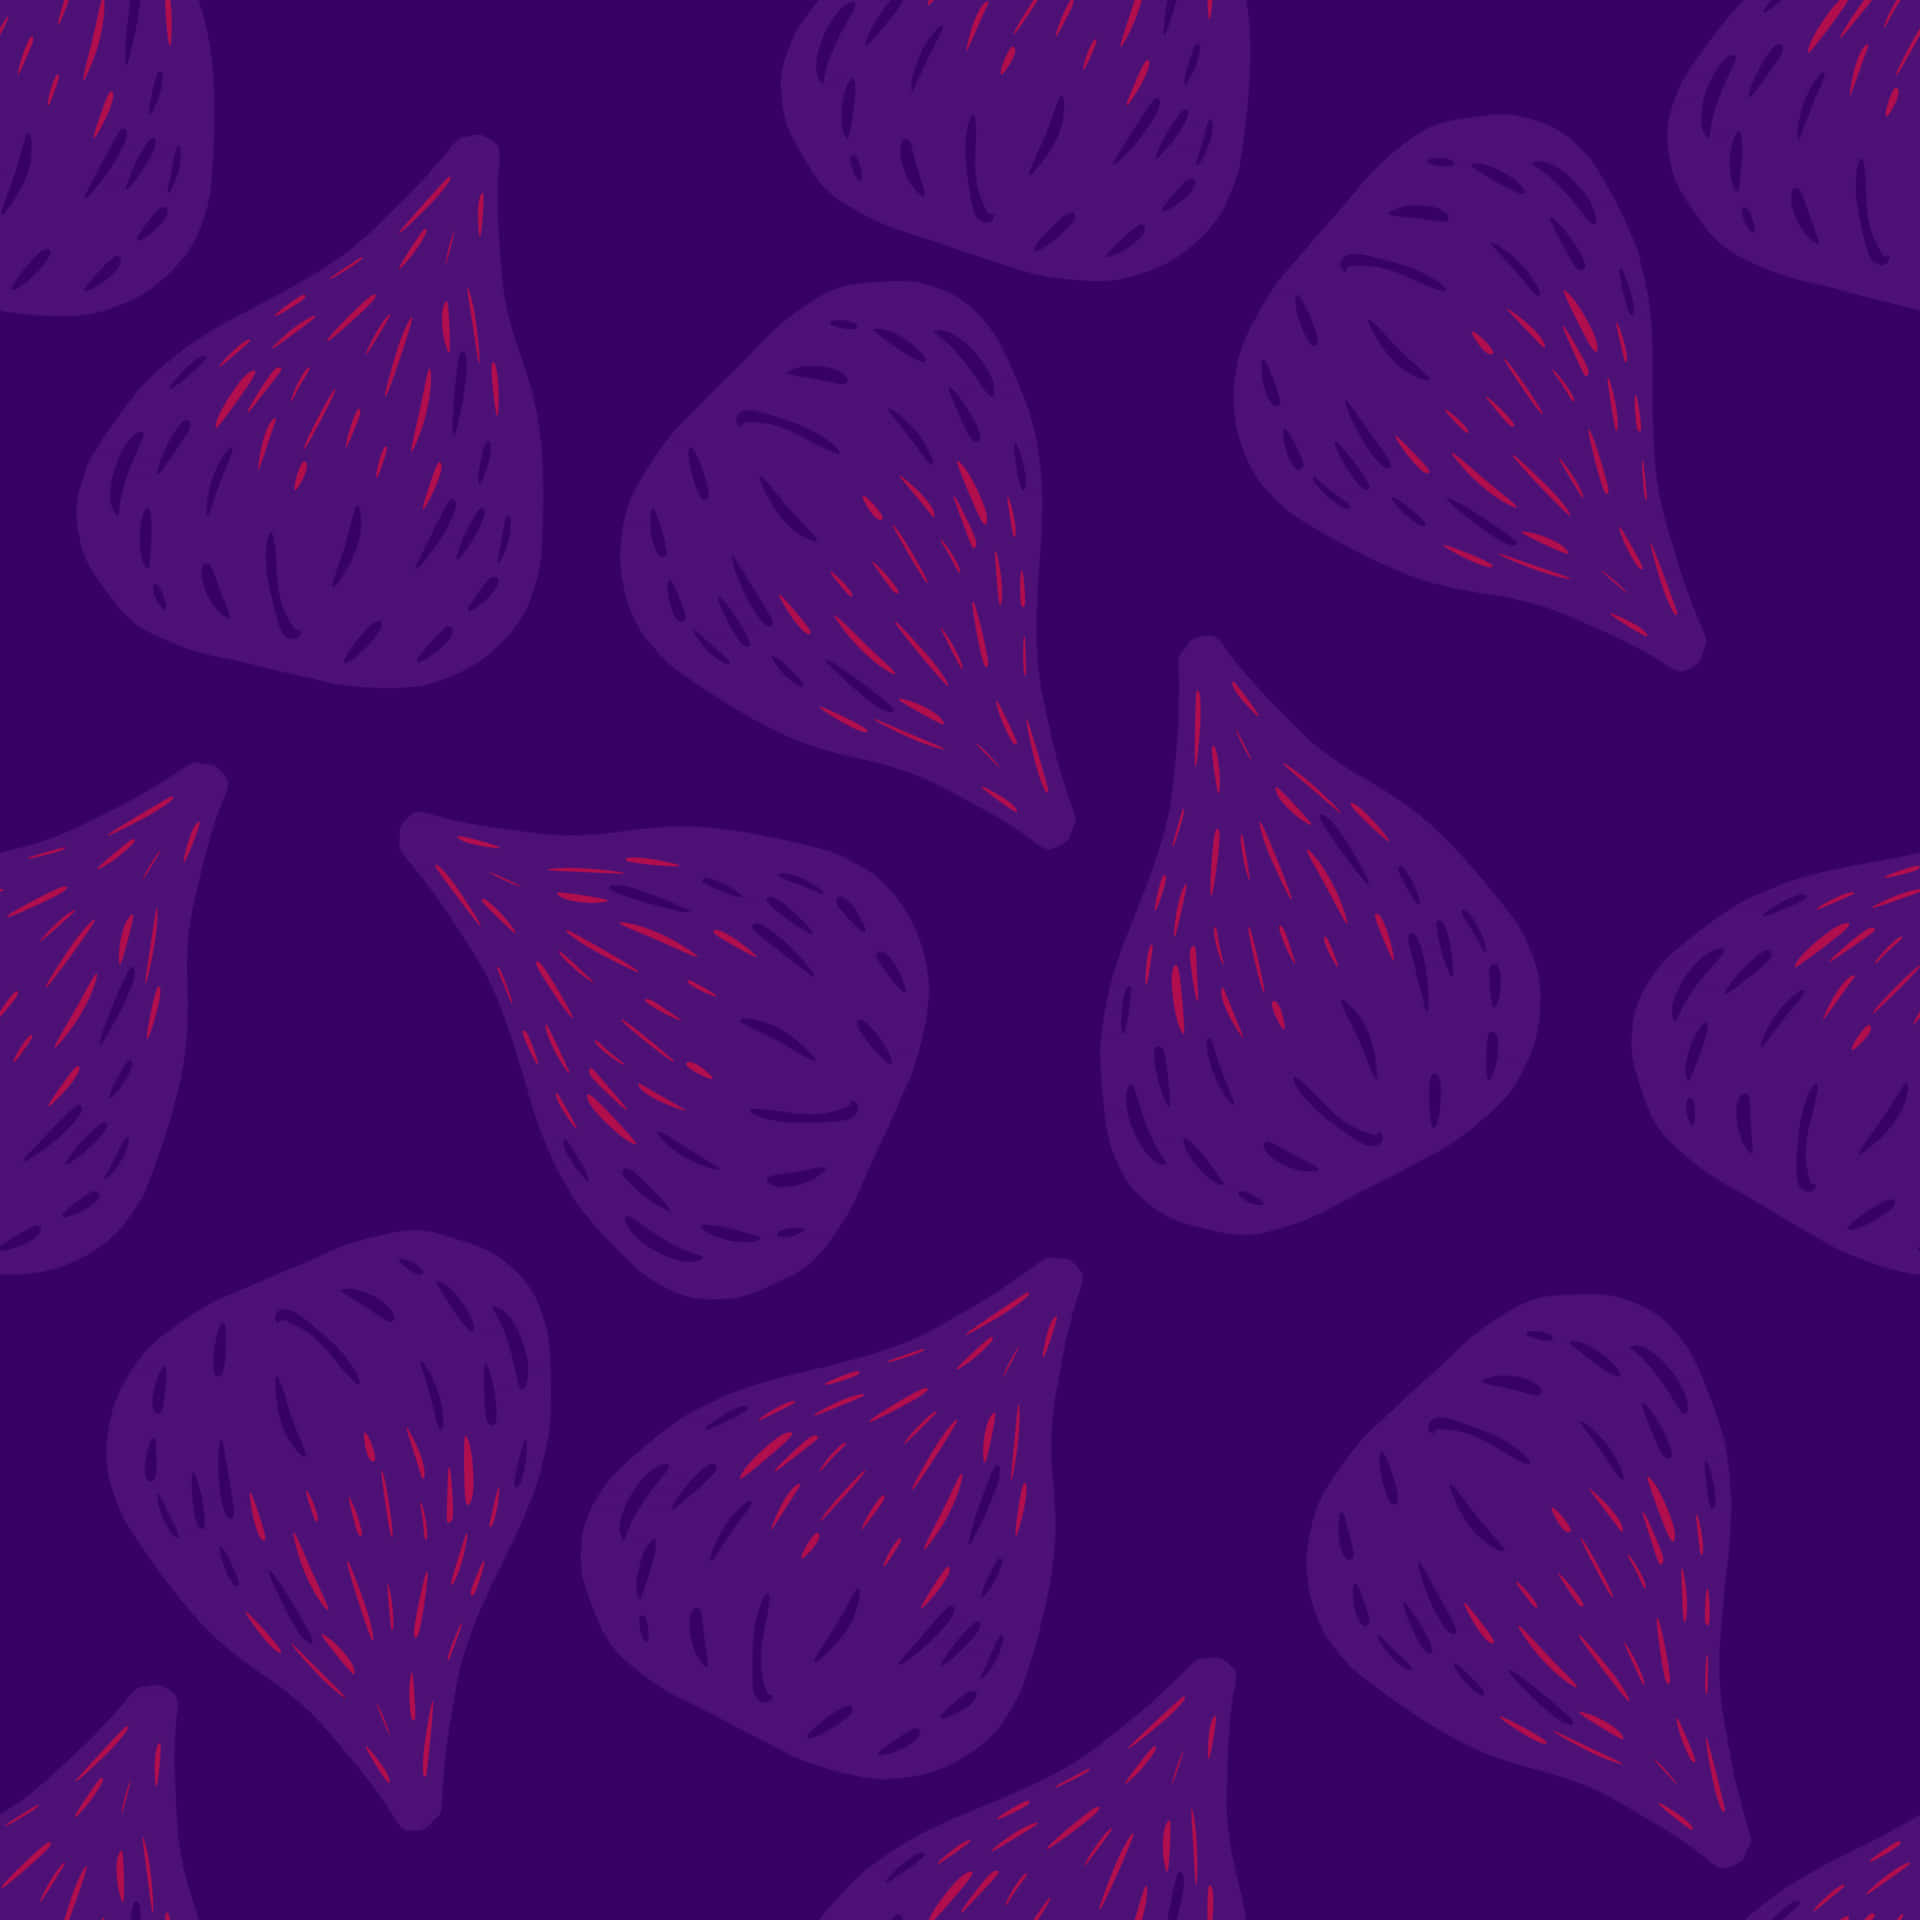 Juicy Purple Figs, Ready to be Eaten! Wallpaper